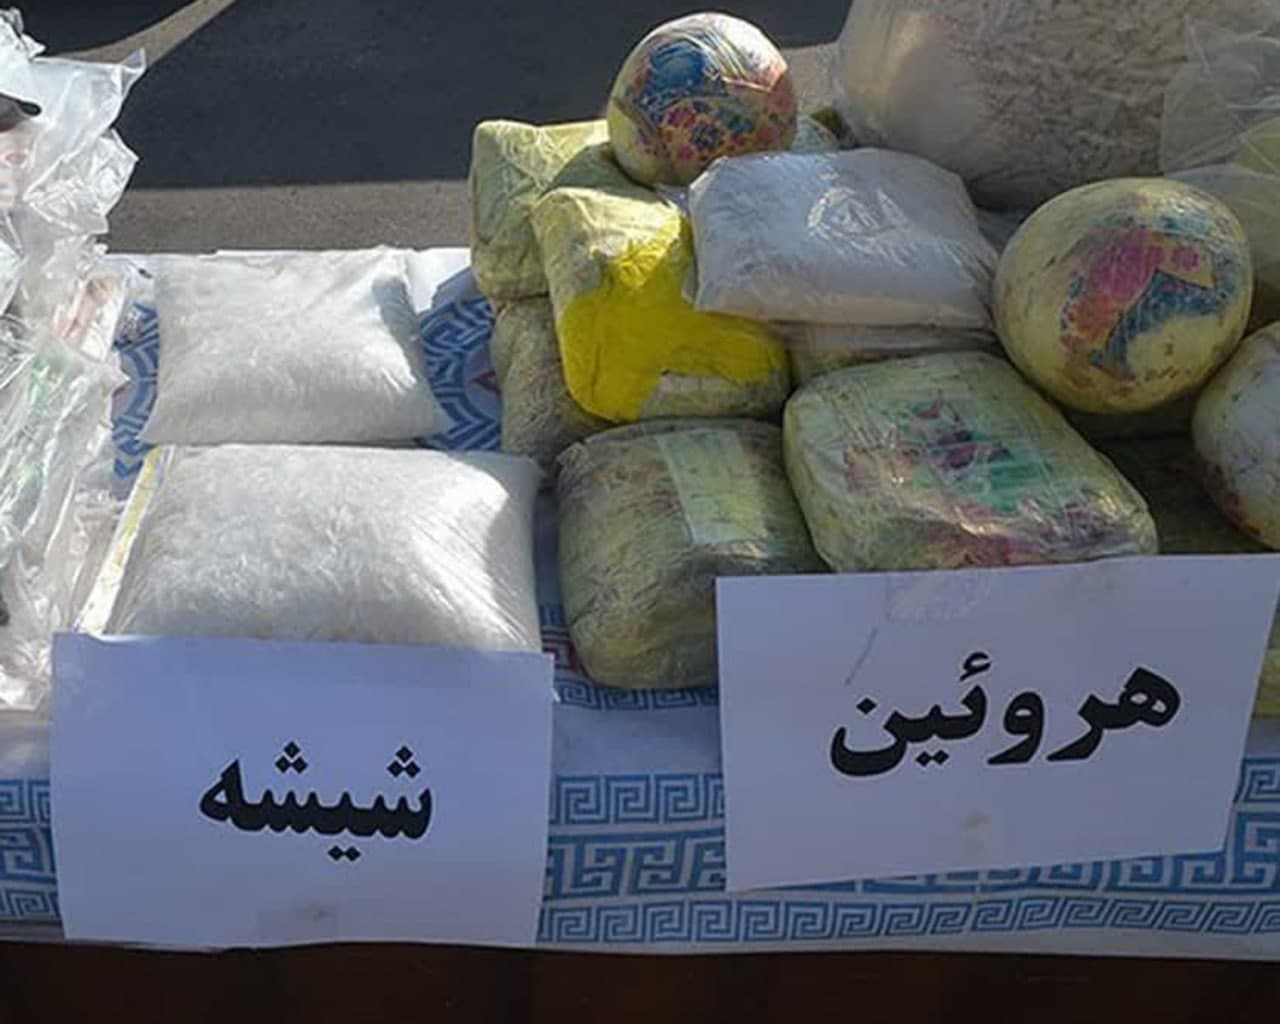 کشف پنج تن مواد مخدر صنعتی در شهریار/چهار متهم بازداشت شدند